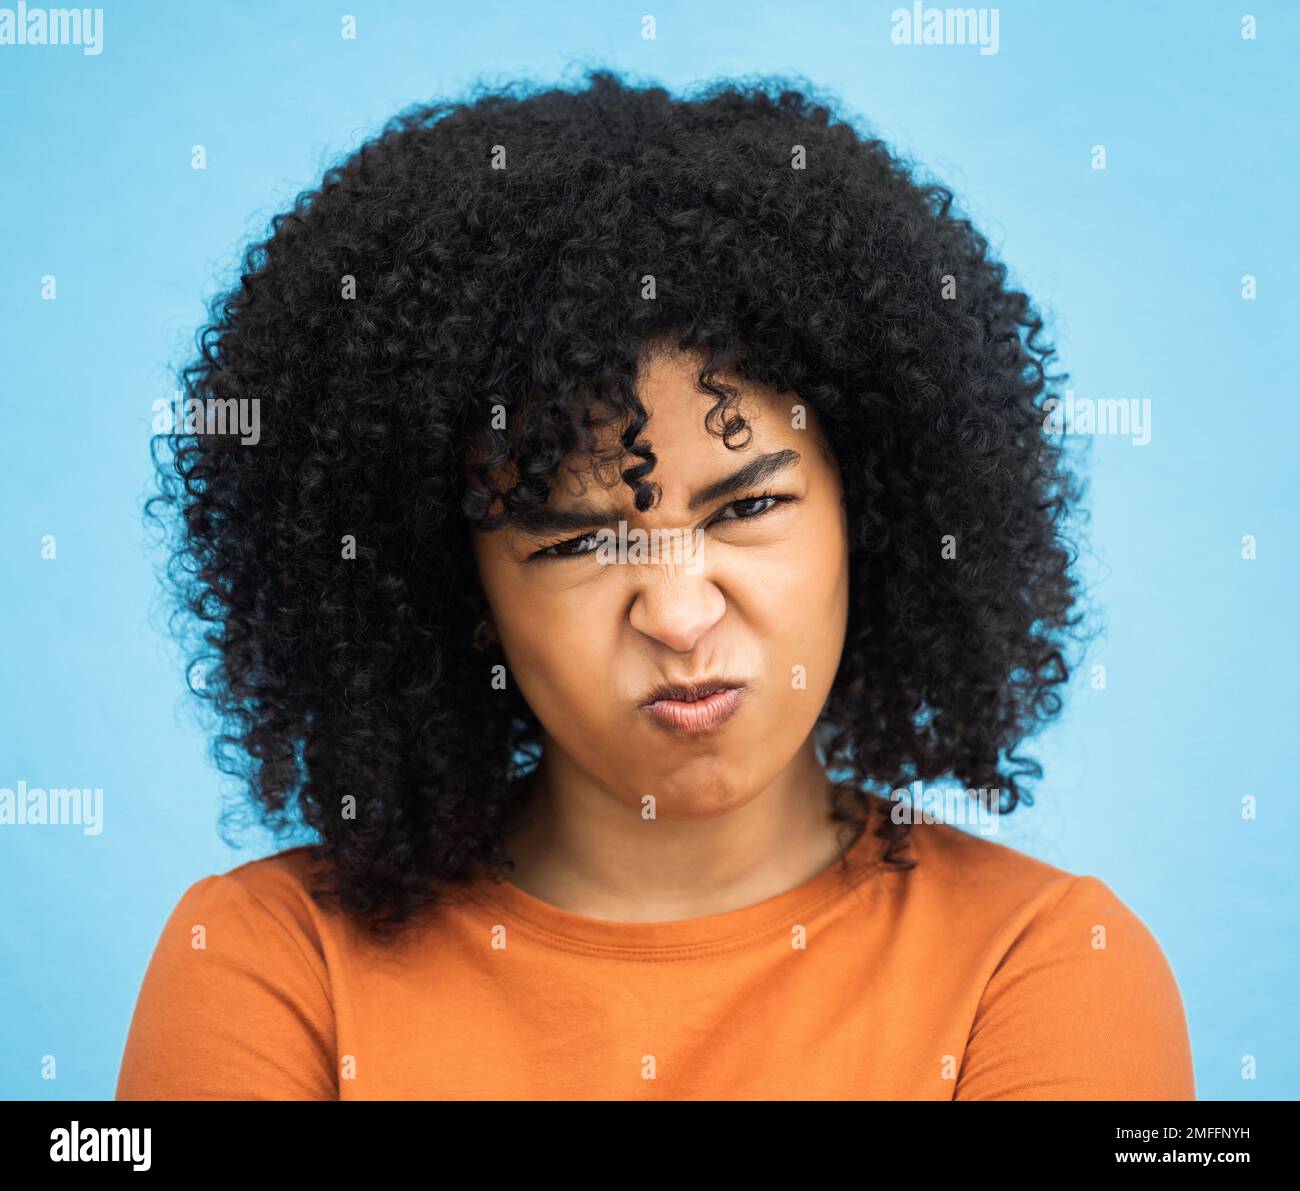 Schwarze Frau, Porträt oder wütender Gesichtsausdruck auf isoliertem blauem Hintergrund bei psychisch bedingtem Burnout. Kopfschuss, Model oder Person mit wütend, genervt oder Stockfoto